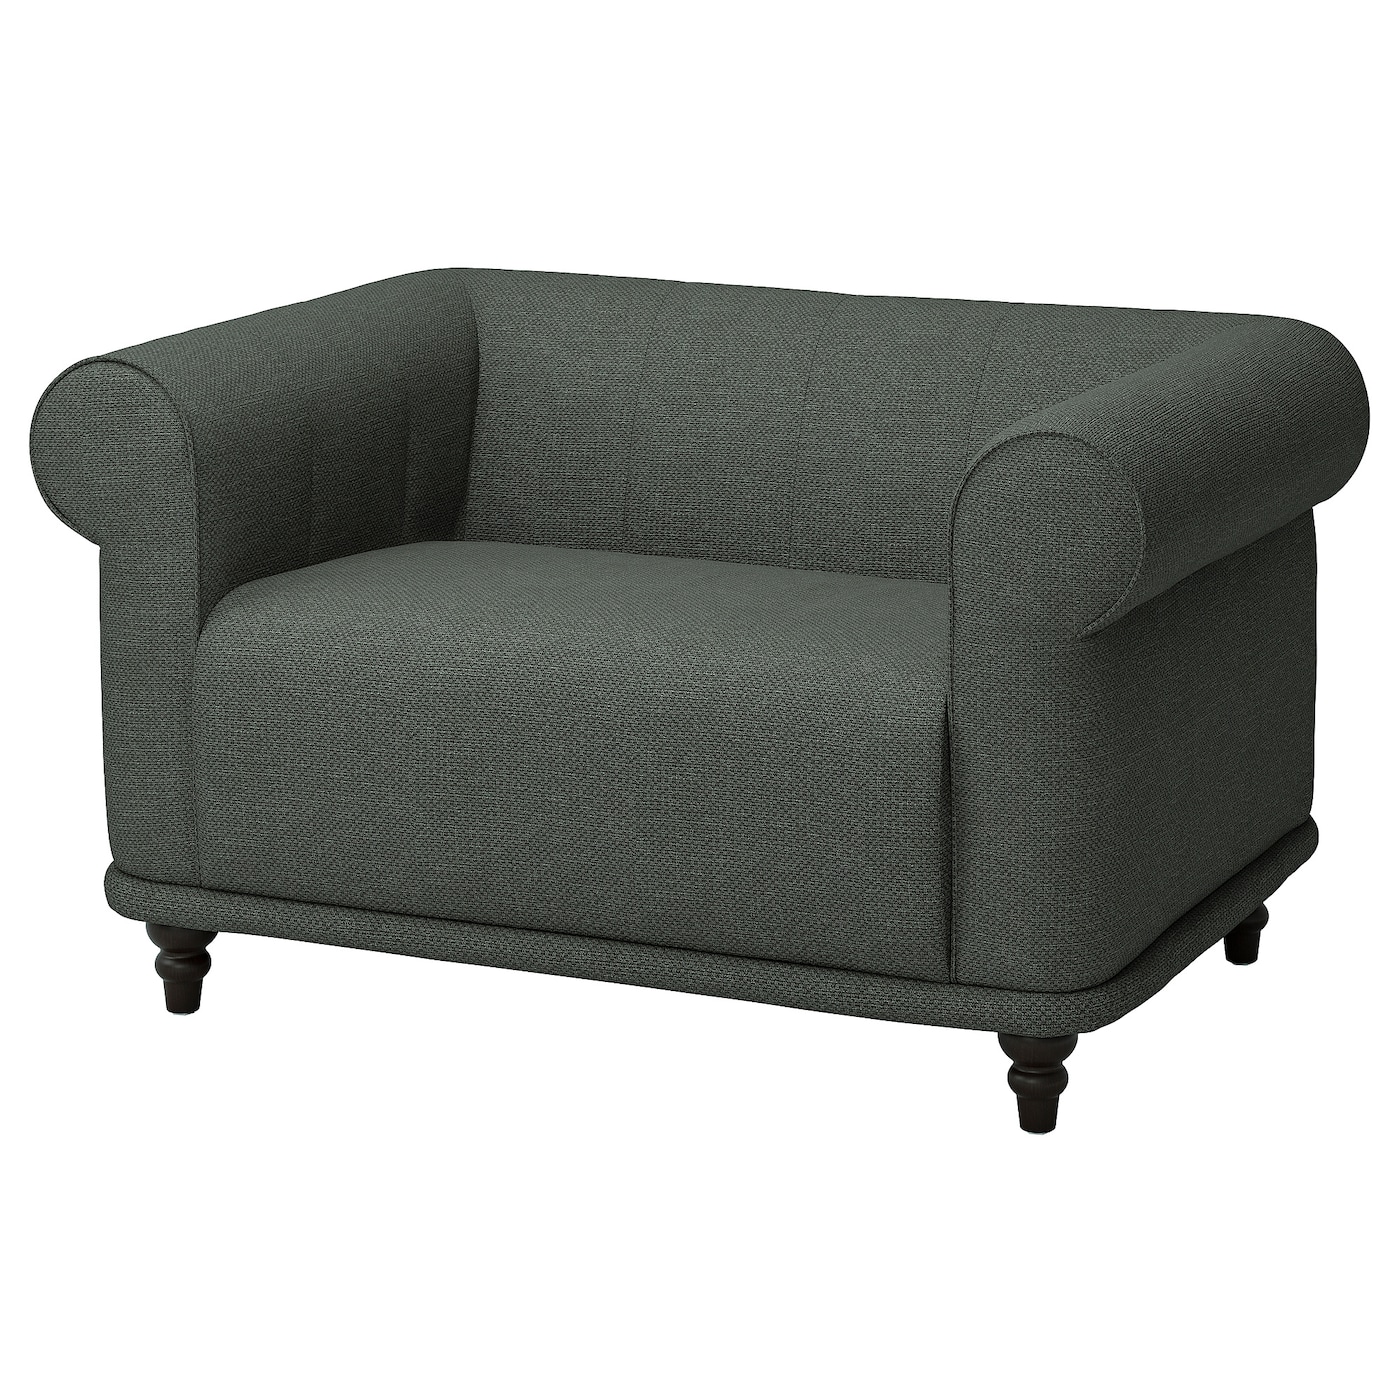 ВИСКАФОРС 1,5-местное кресло, Лейде серый/зеленый/коричневый VISKAFORS IKEA